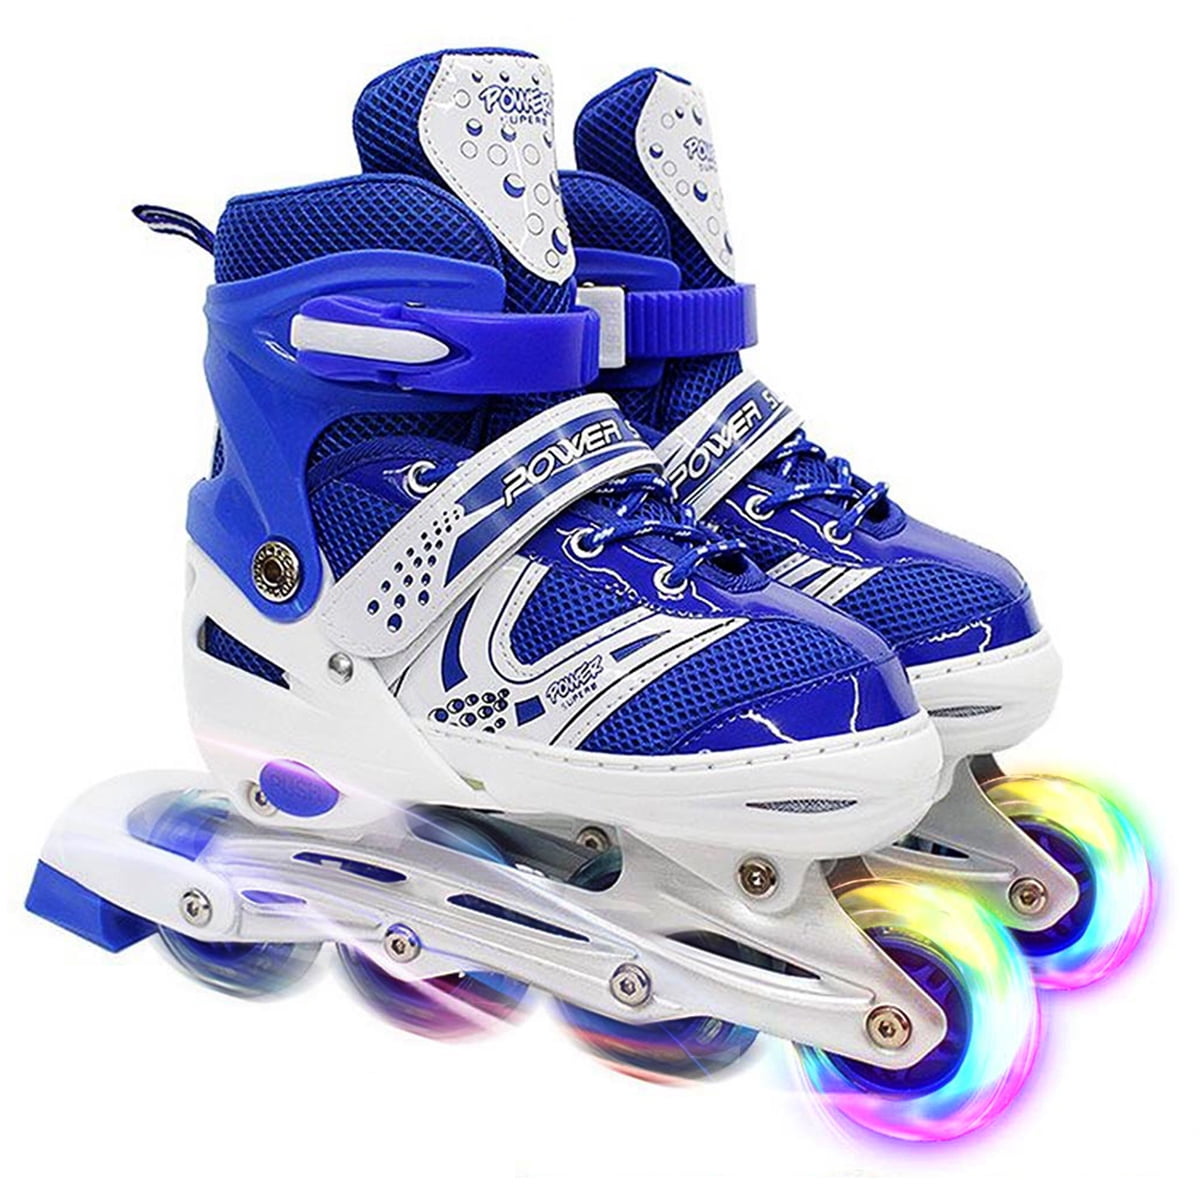 SK8 Zone Boys Blue Roller Blades Inline Skates Adjustable Size Childrens Kids Pro Skating New